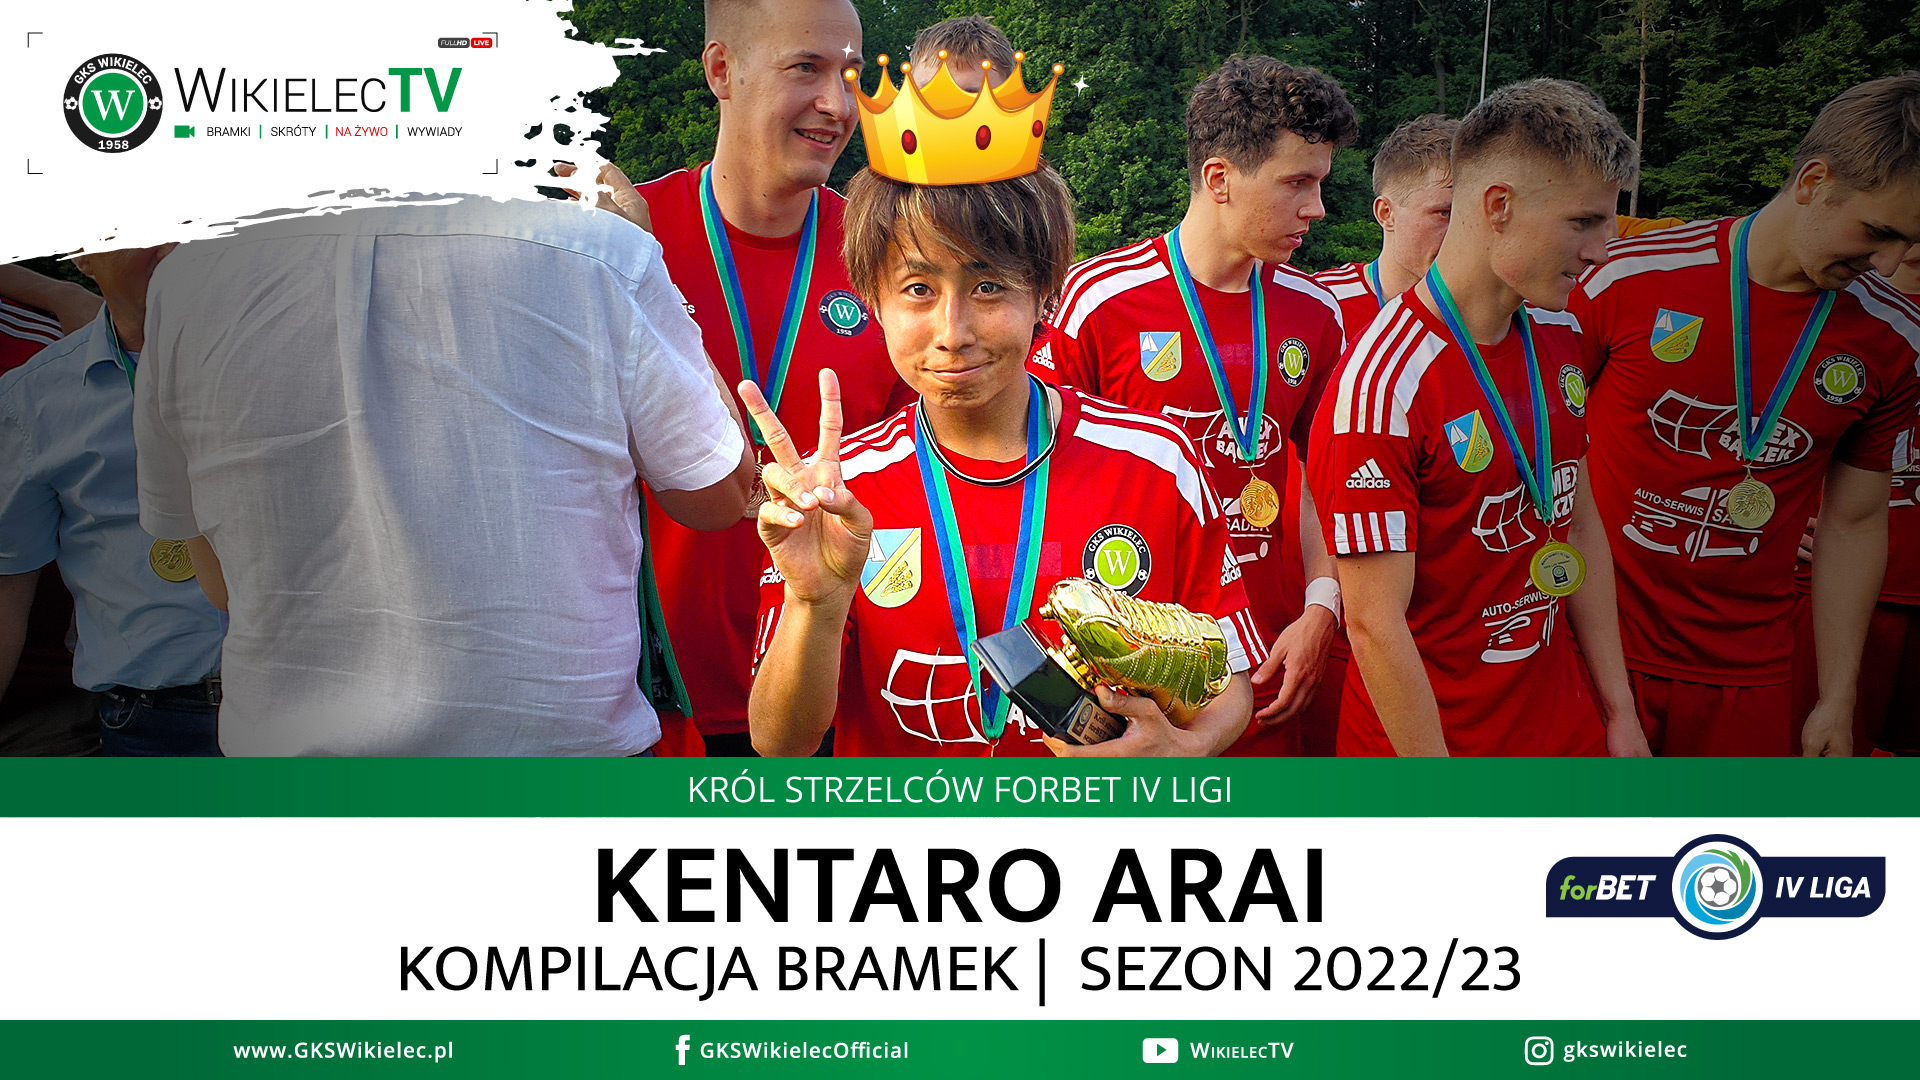 WikielecTV: Kentaro Arai - wszystkie bramki w forBET IV lidze 2022/23